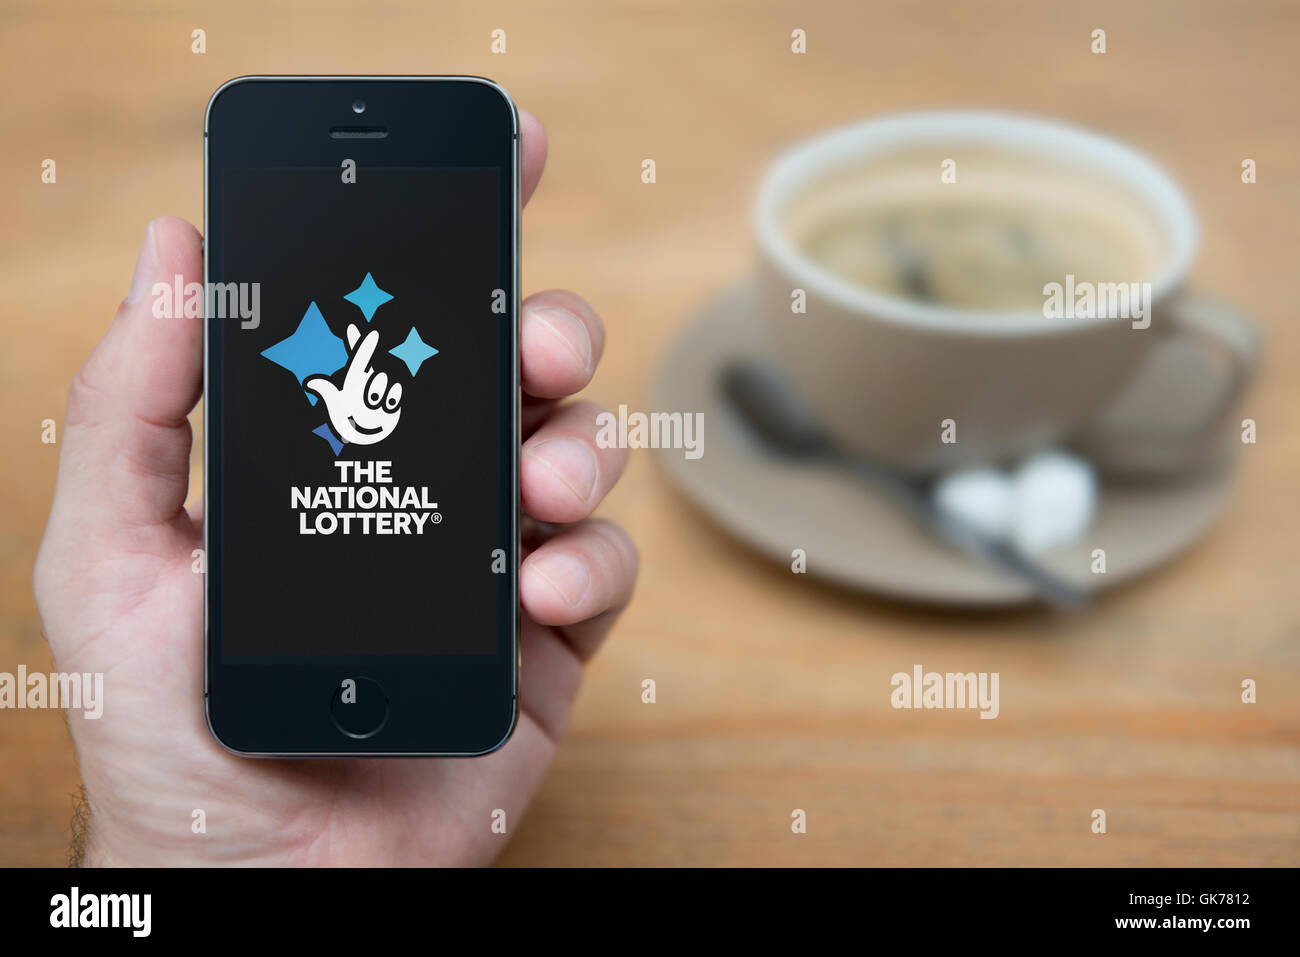 Un hombre mira el iPhone que muestra el logotipo de la Lotería Nacional, mientras que se sentó con una taza de café (uso Editorial solamente). Foto de stock